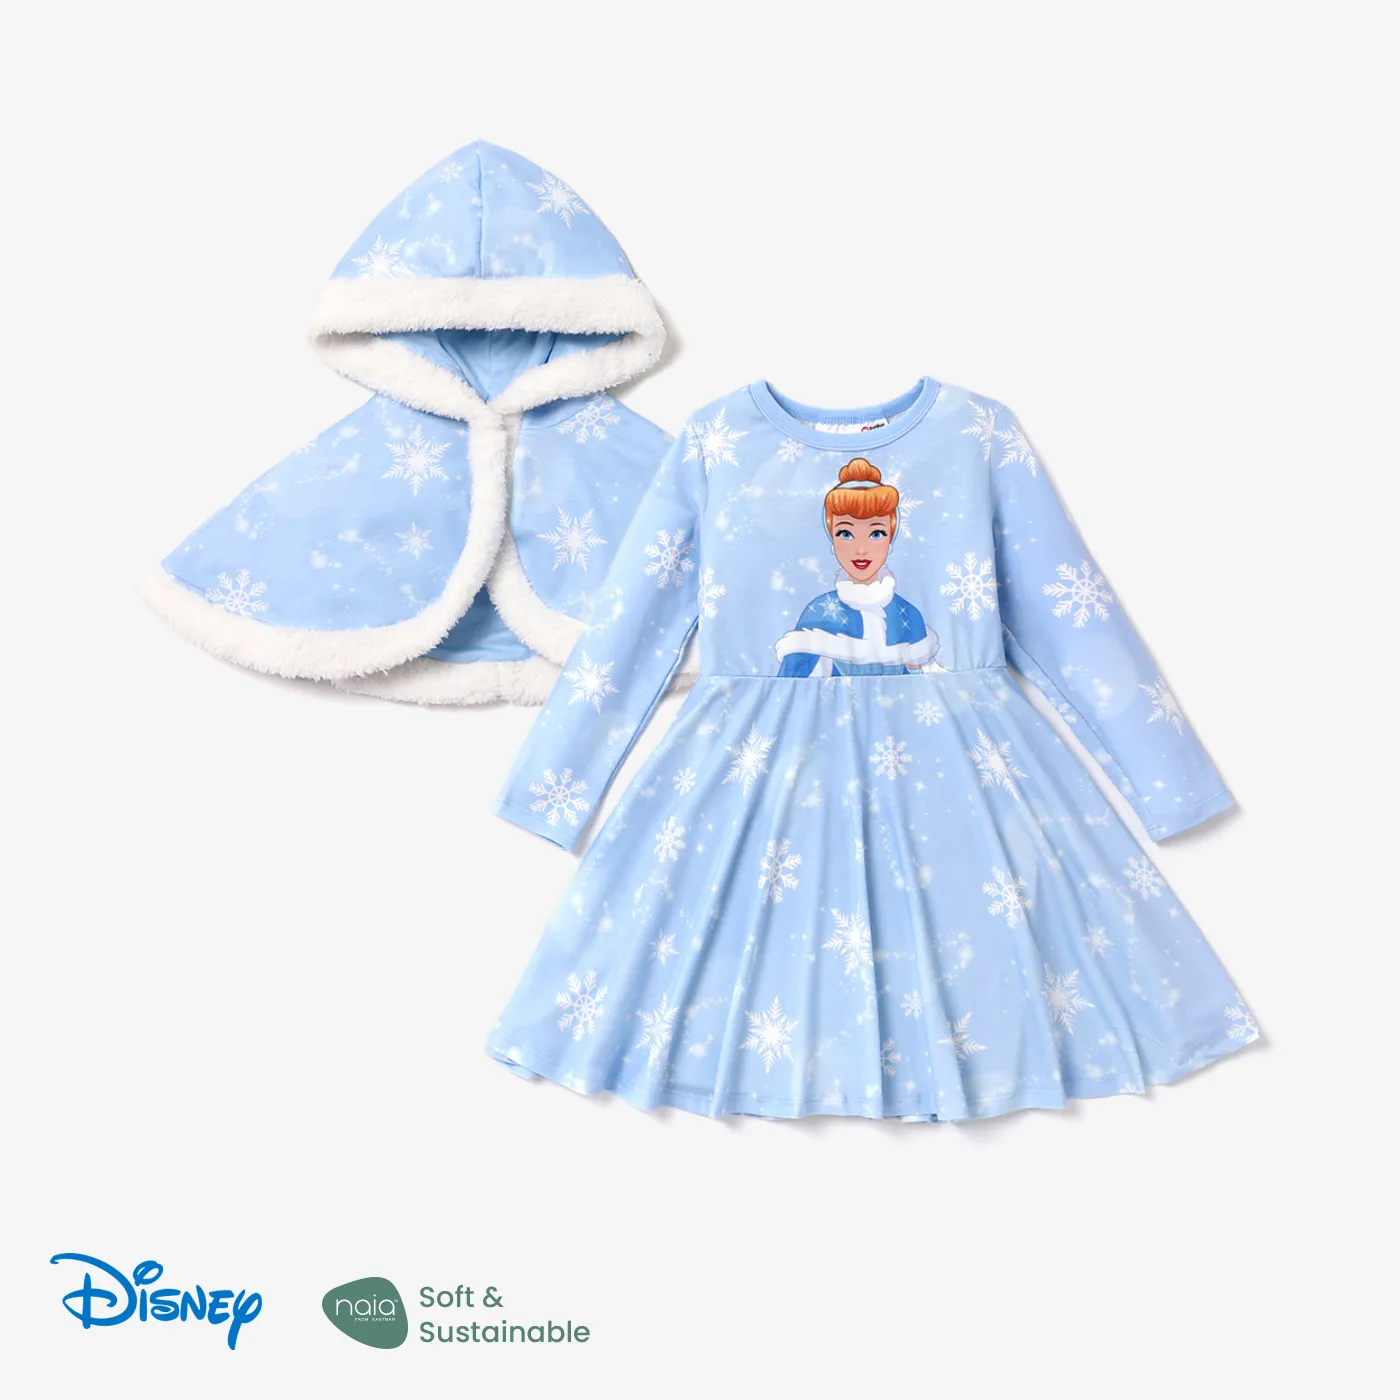 Disney Princess Toddler Girl Naiaâ¢ Character Print Long-sleeve Dress And Hooded Allover Snowflake Print Cloak Set